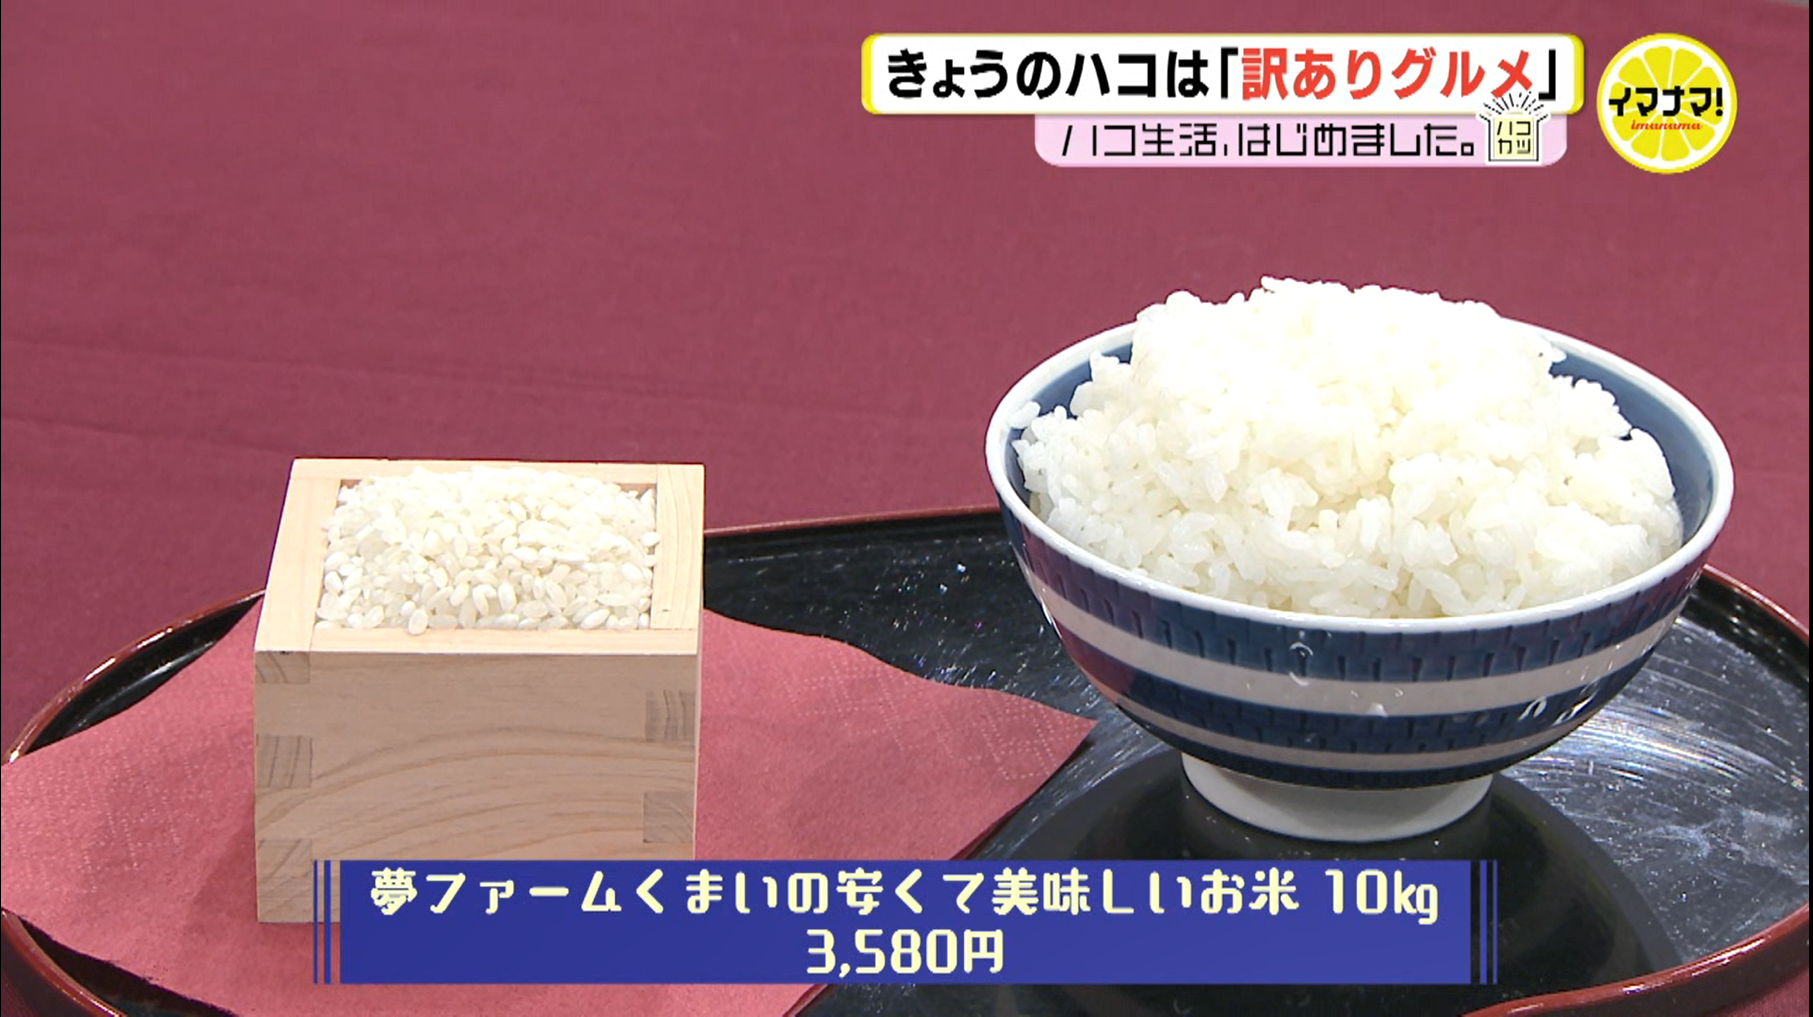 RCC 中国放送様の「イマナマ！」に当農園のお米を紹介して頂きました